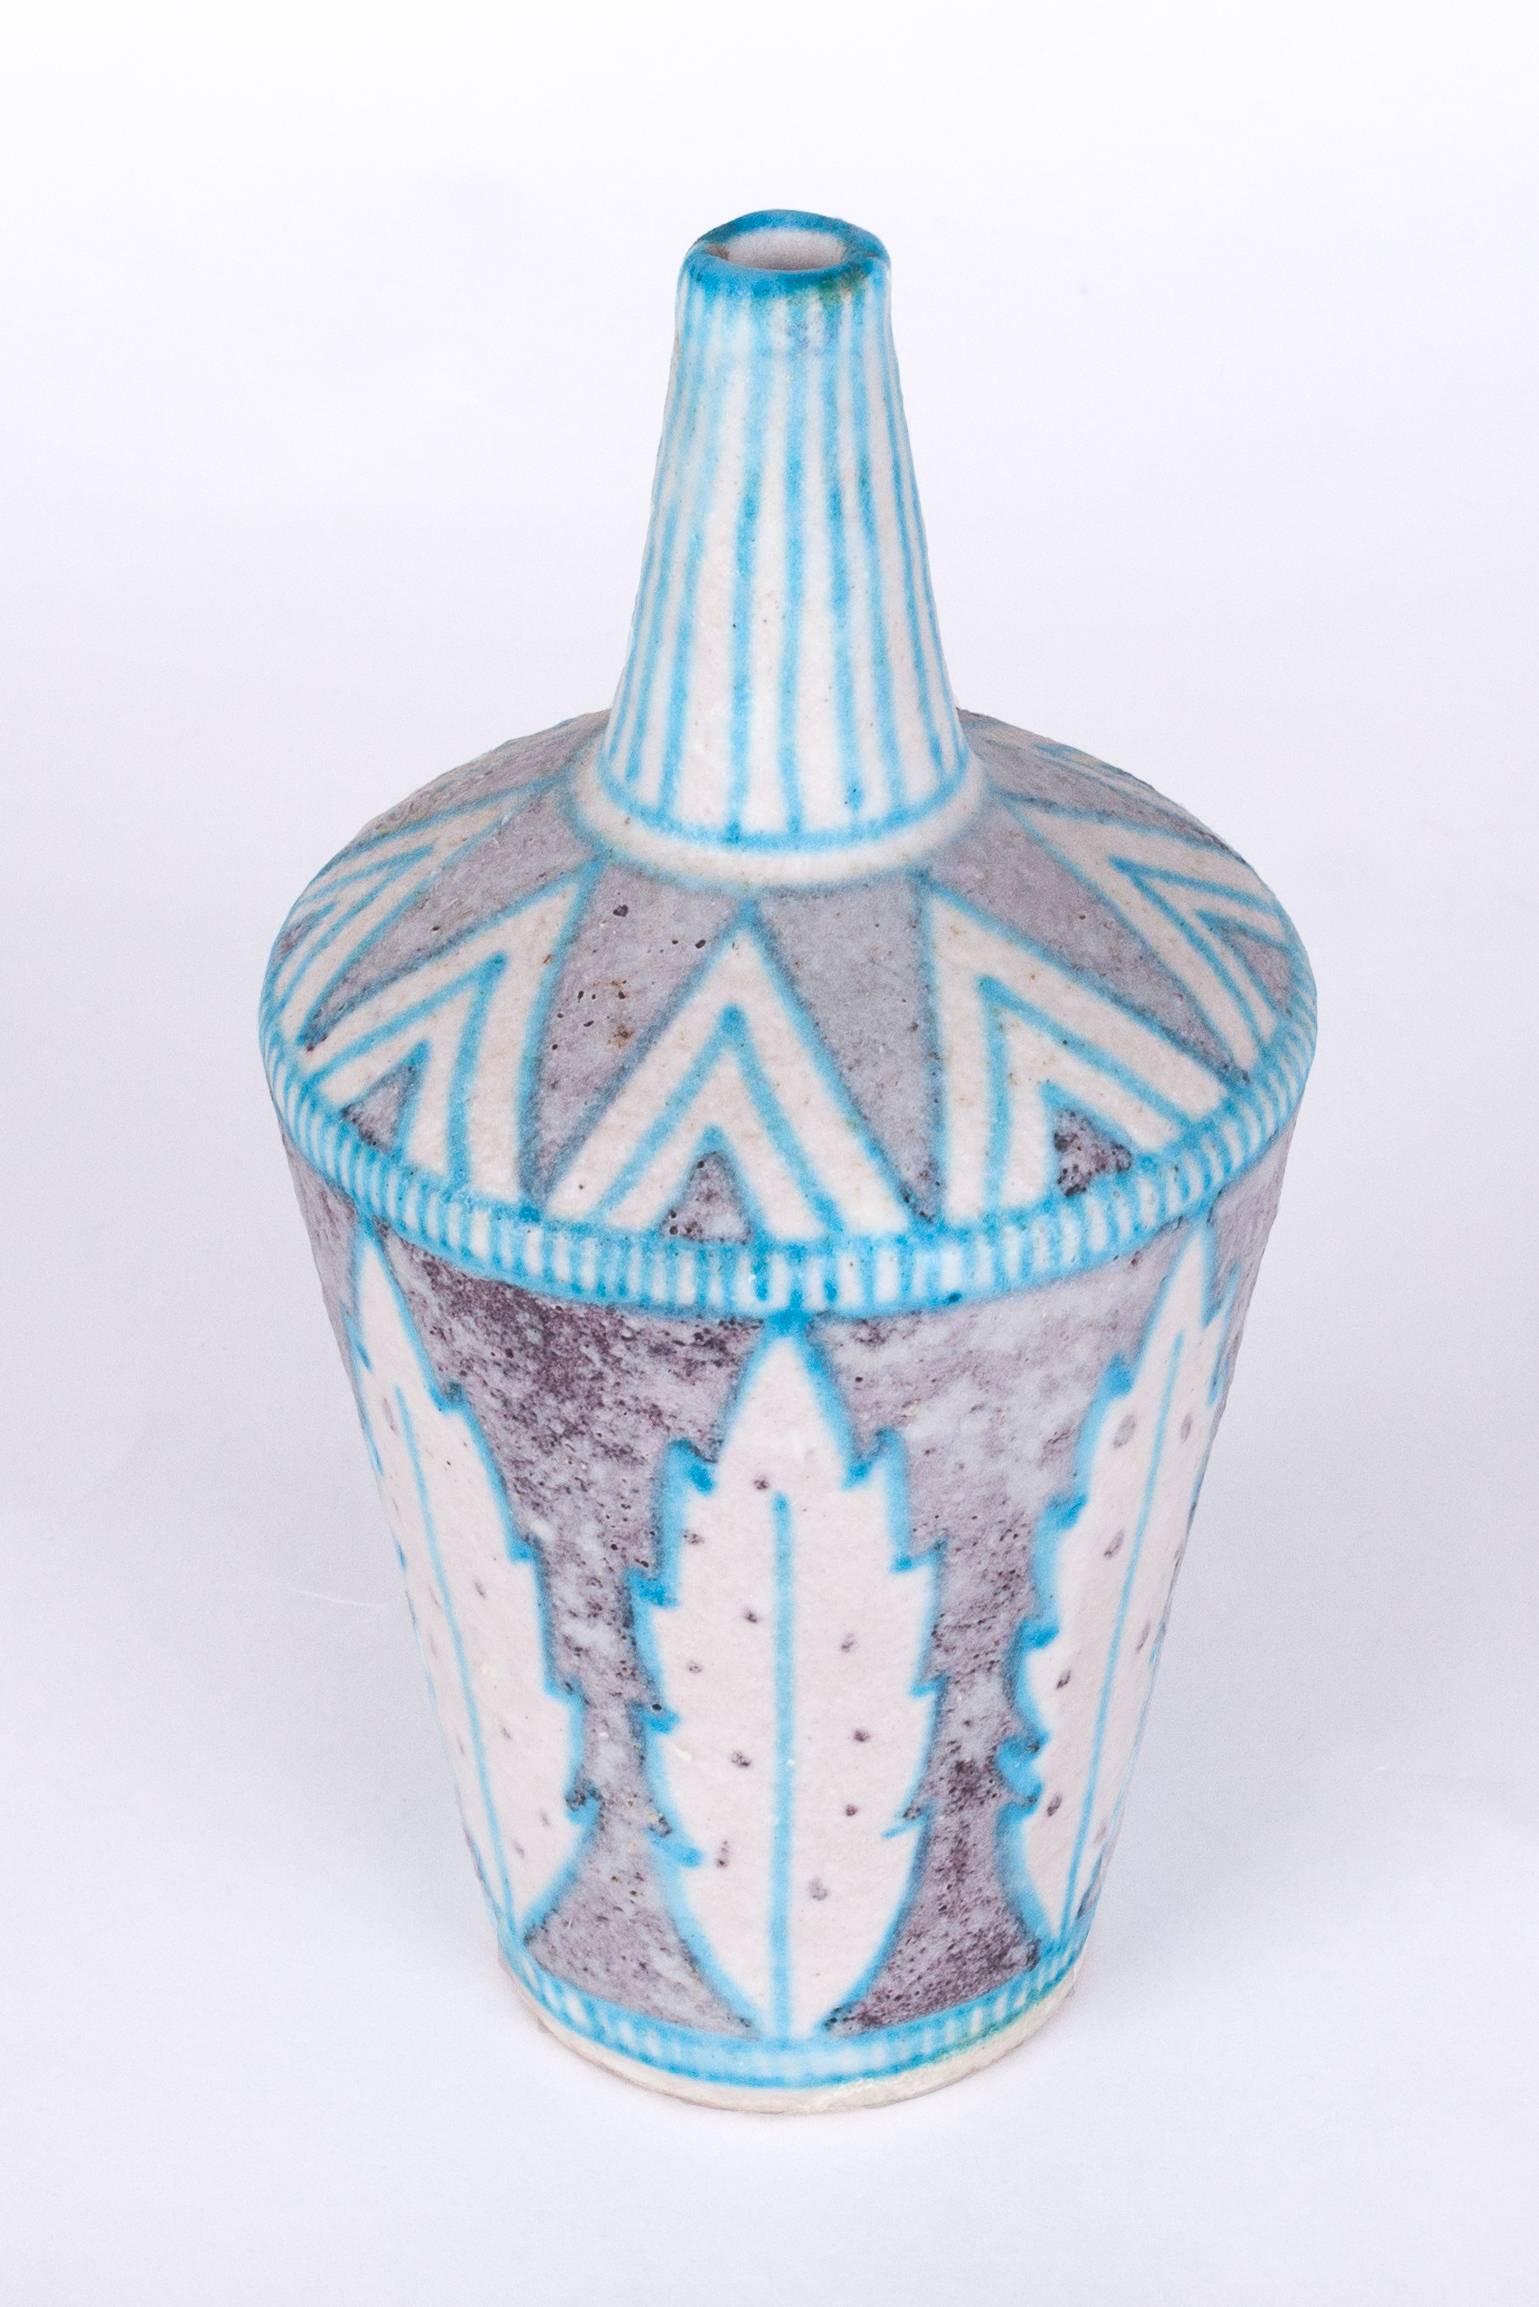 Attraktive, lebhaft glasierte Vase aus Keramik von C.A.S. Vietri im Stil von Guido Gambone, mit einem anmutigen Blatt- und einem verschlungenen Dreiecksmotiv. Handgedreht mit blauer, brauner und weißer Salzglasur.

Signiert auf der Unterseite